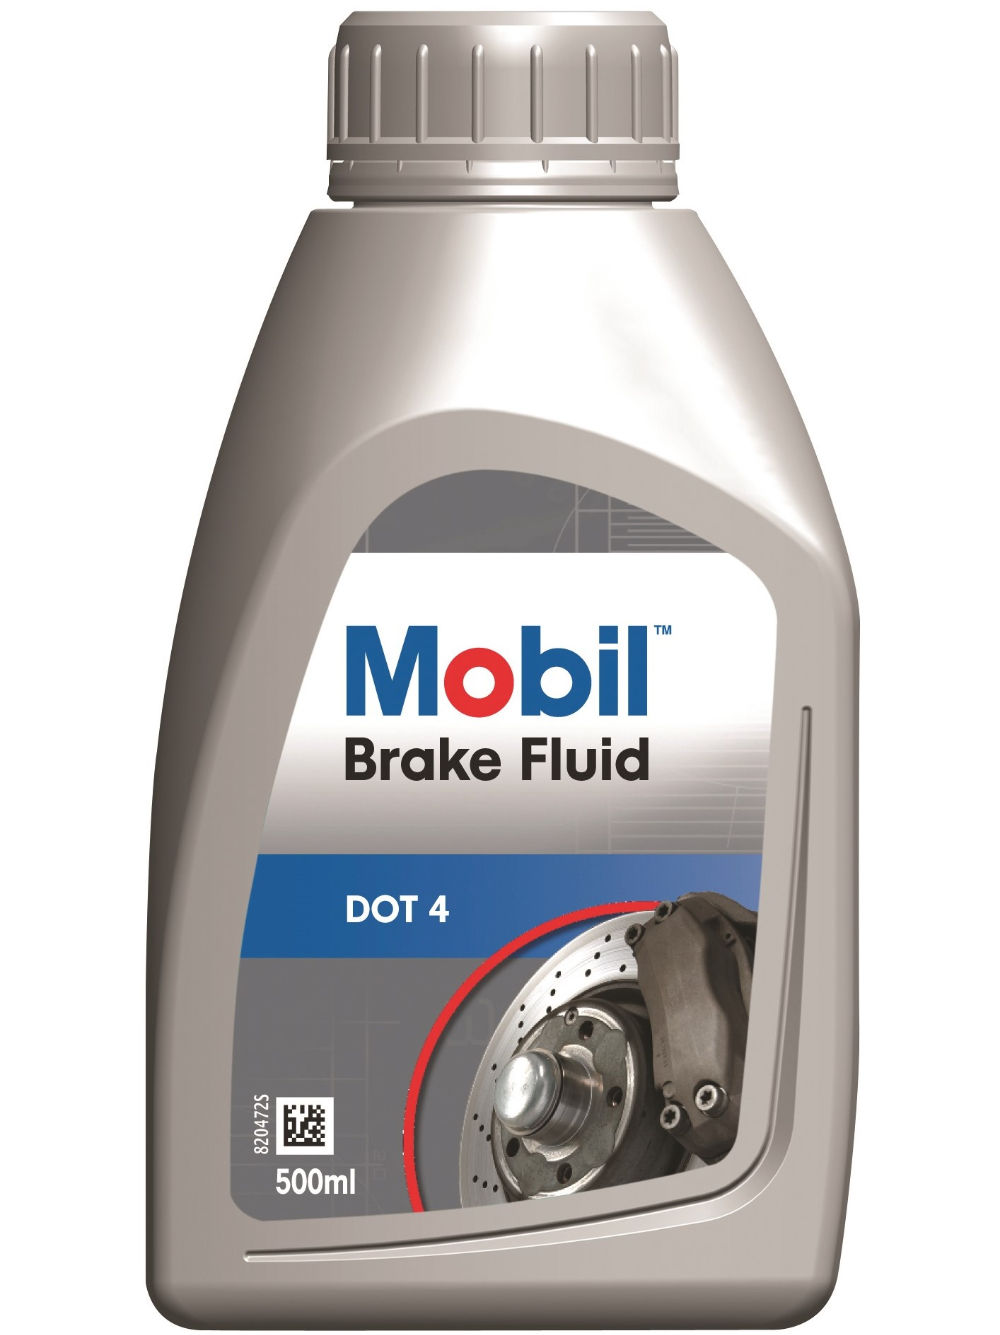 Mobil Brake Fluid